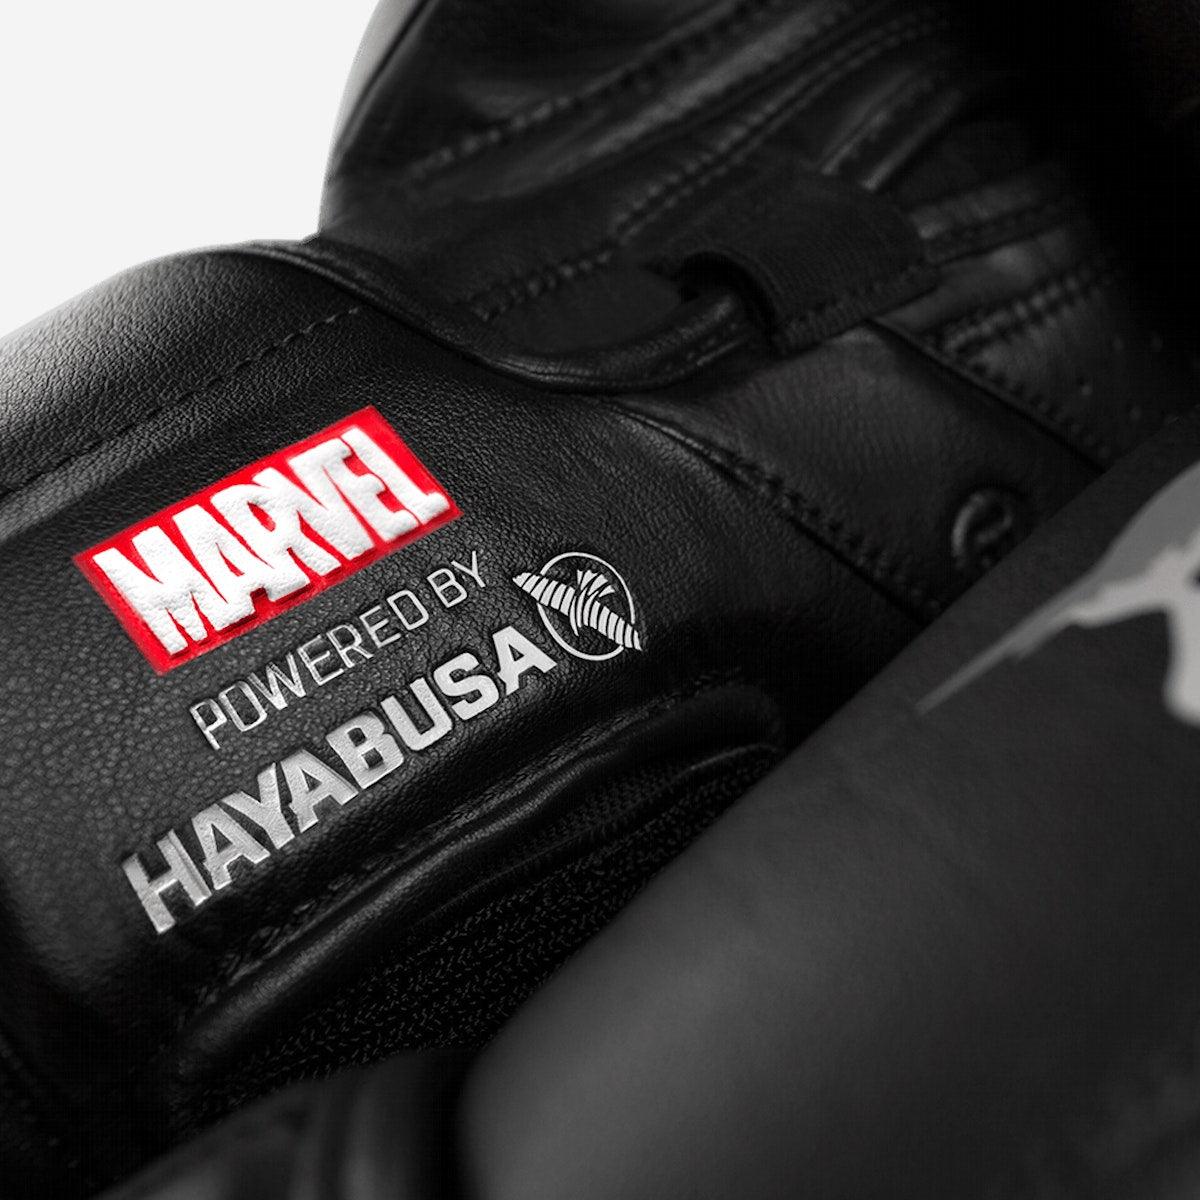 Marvel's The Punisher Boxing Gloves - Violent Art Shop